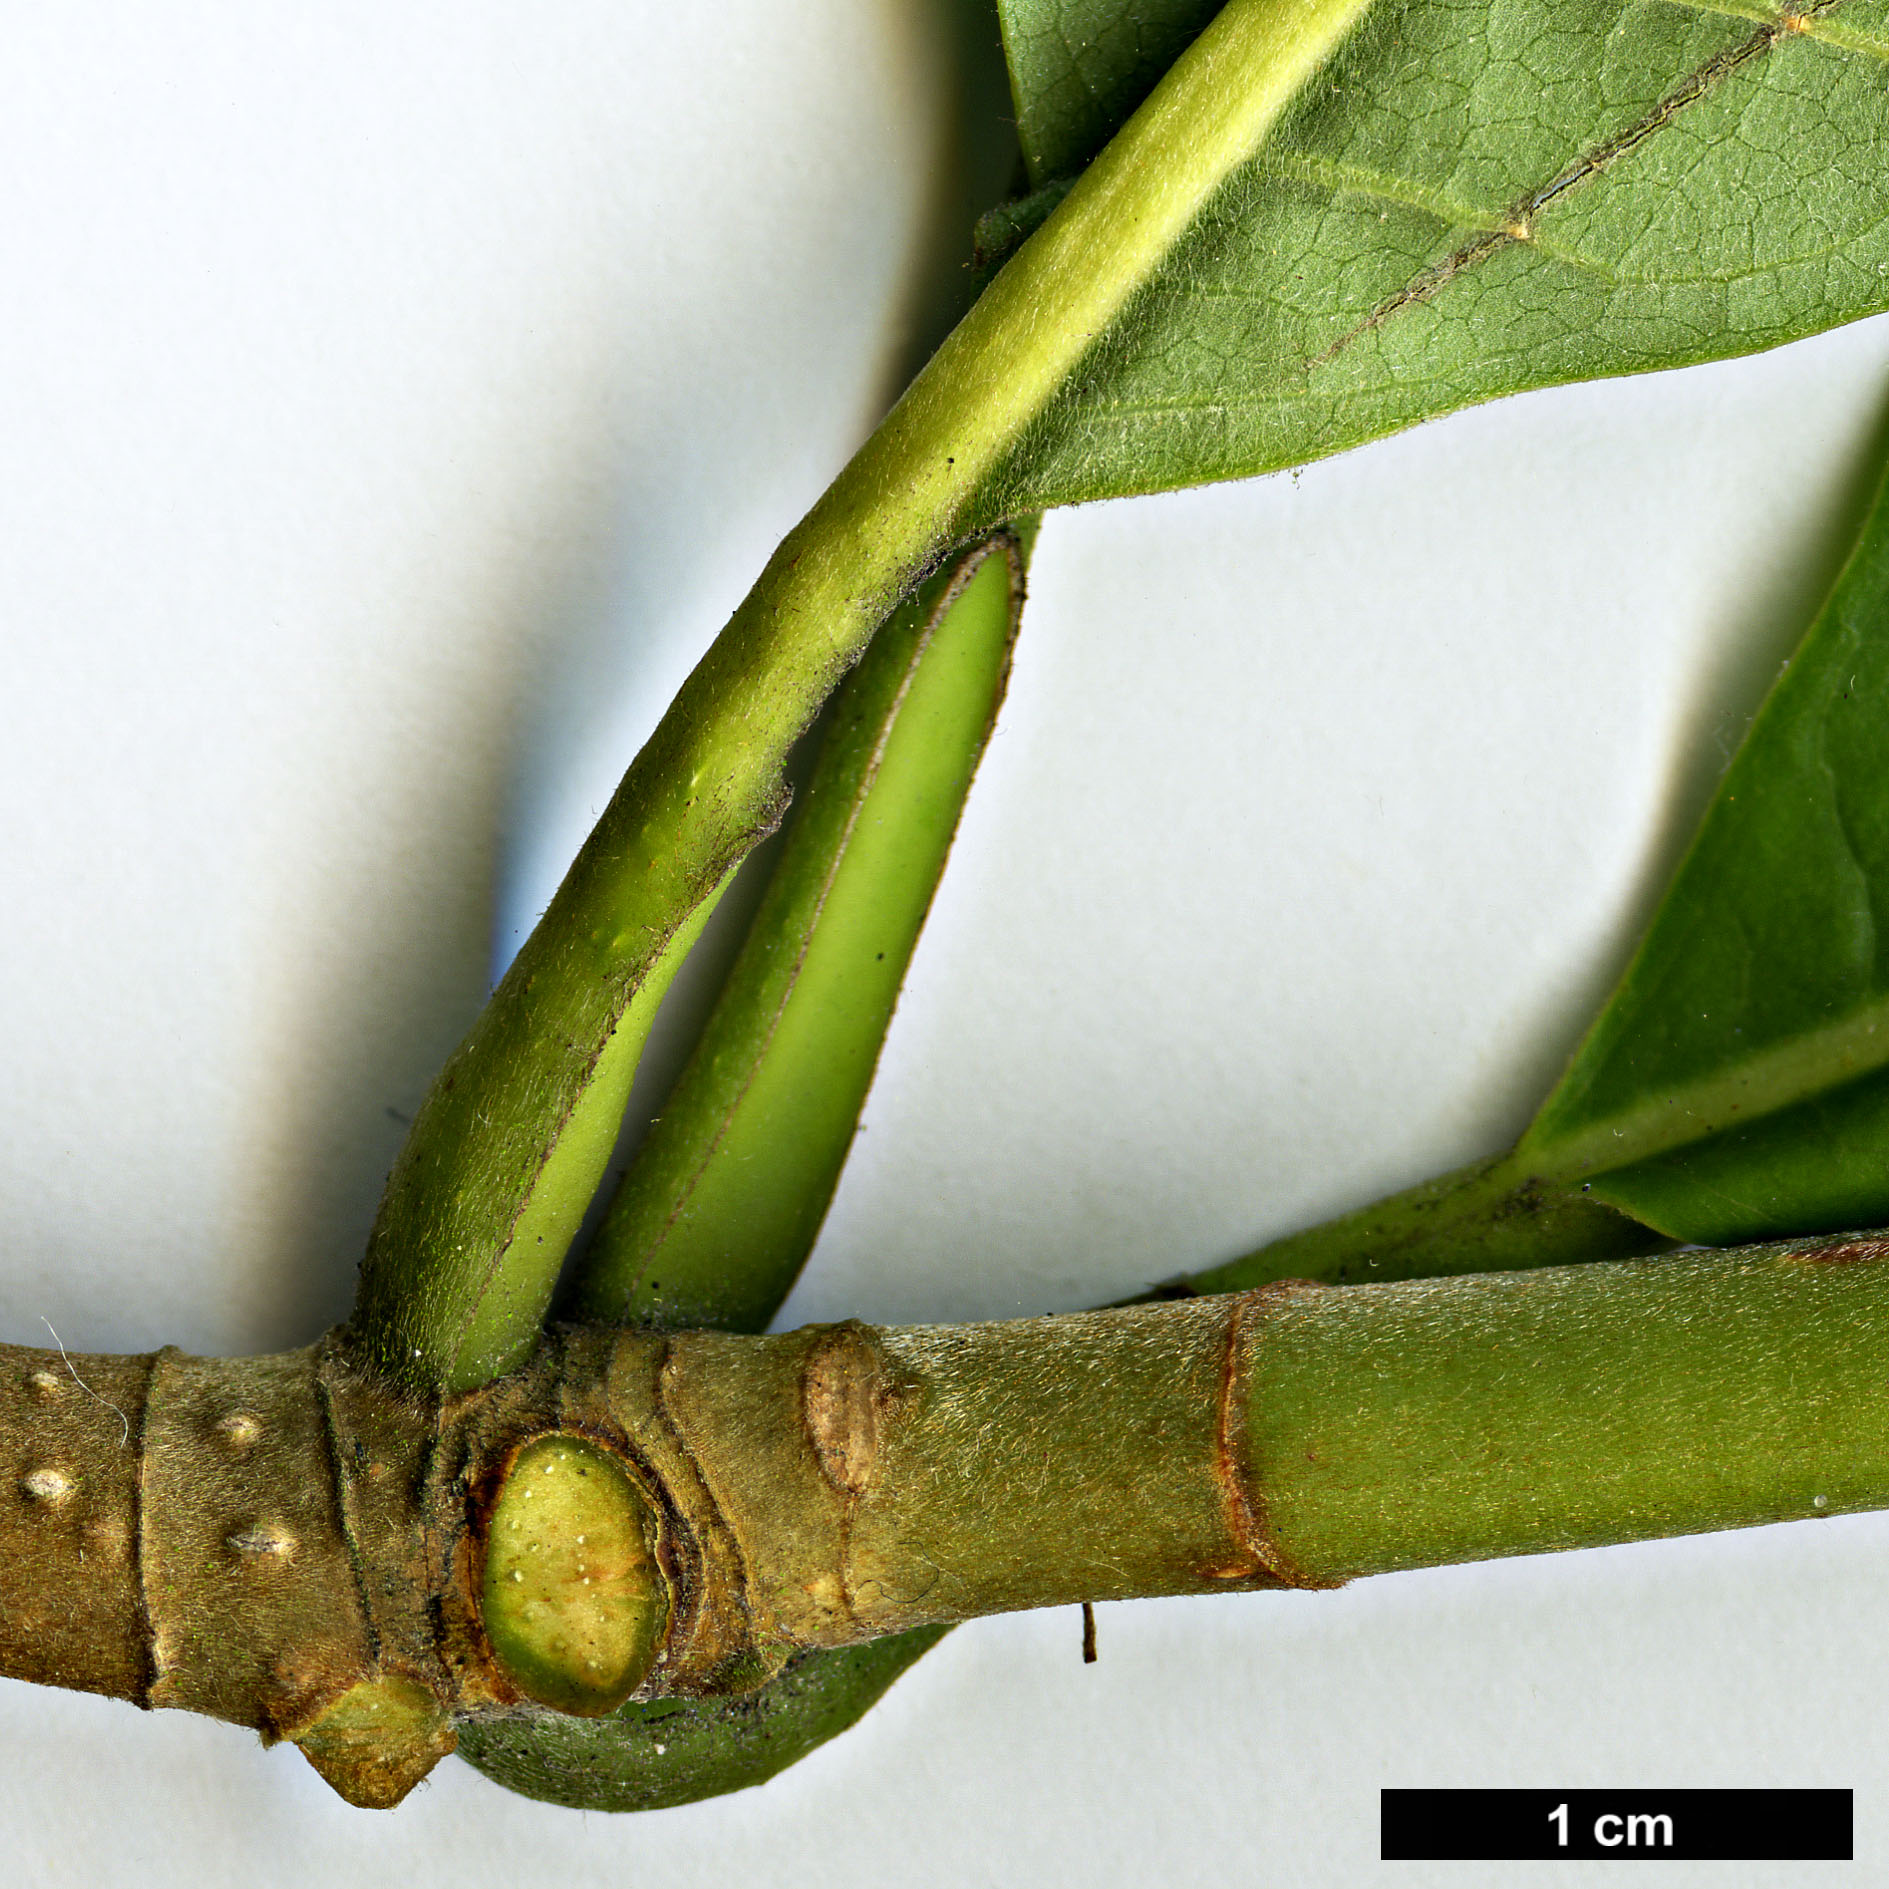 High resolution image: Family: Magnoliaceae - Genus: Magnolia - Taxon: officinalis - SpeciesSub: var. biloba